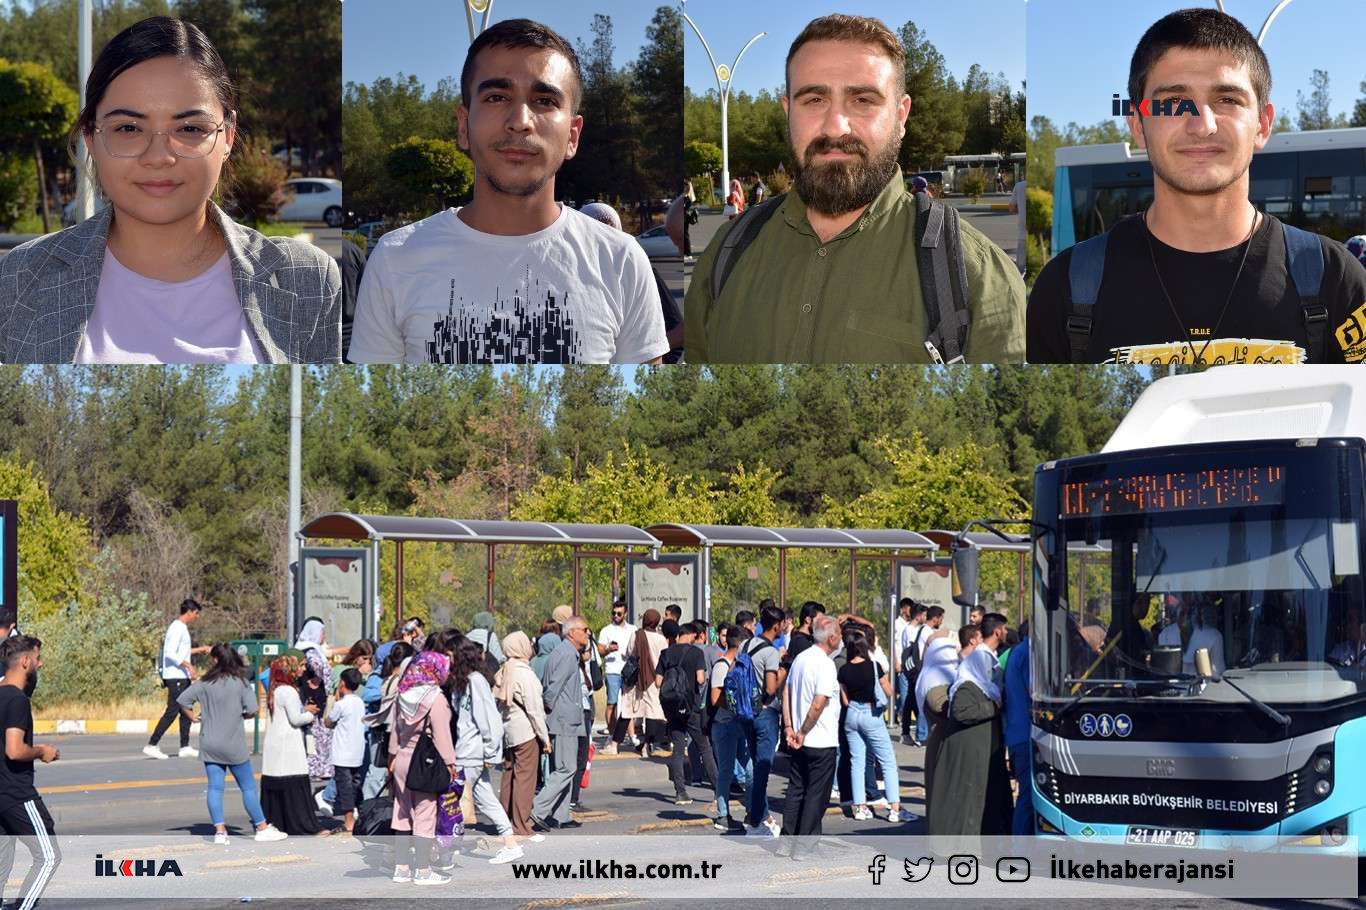 VİDEO HABER - Diyarbakırlılar: Belediye araçları yetersiz sayı arttırılmalı